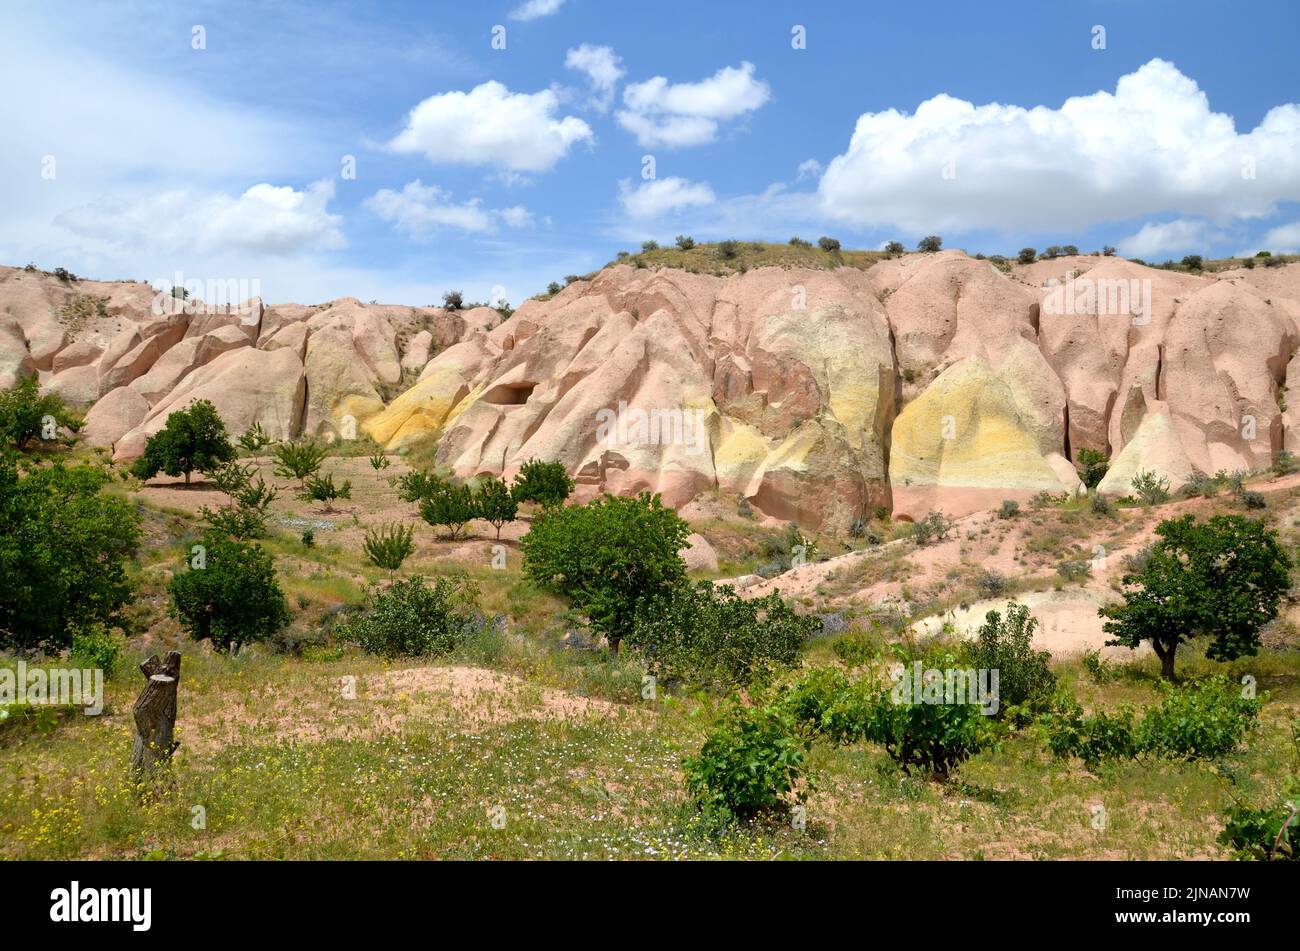 paysage avec arbres et formations rocheuses volcaniques dans la vallée de la 'red', cappadoce turquie Banque D'Images